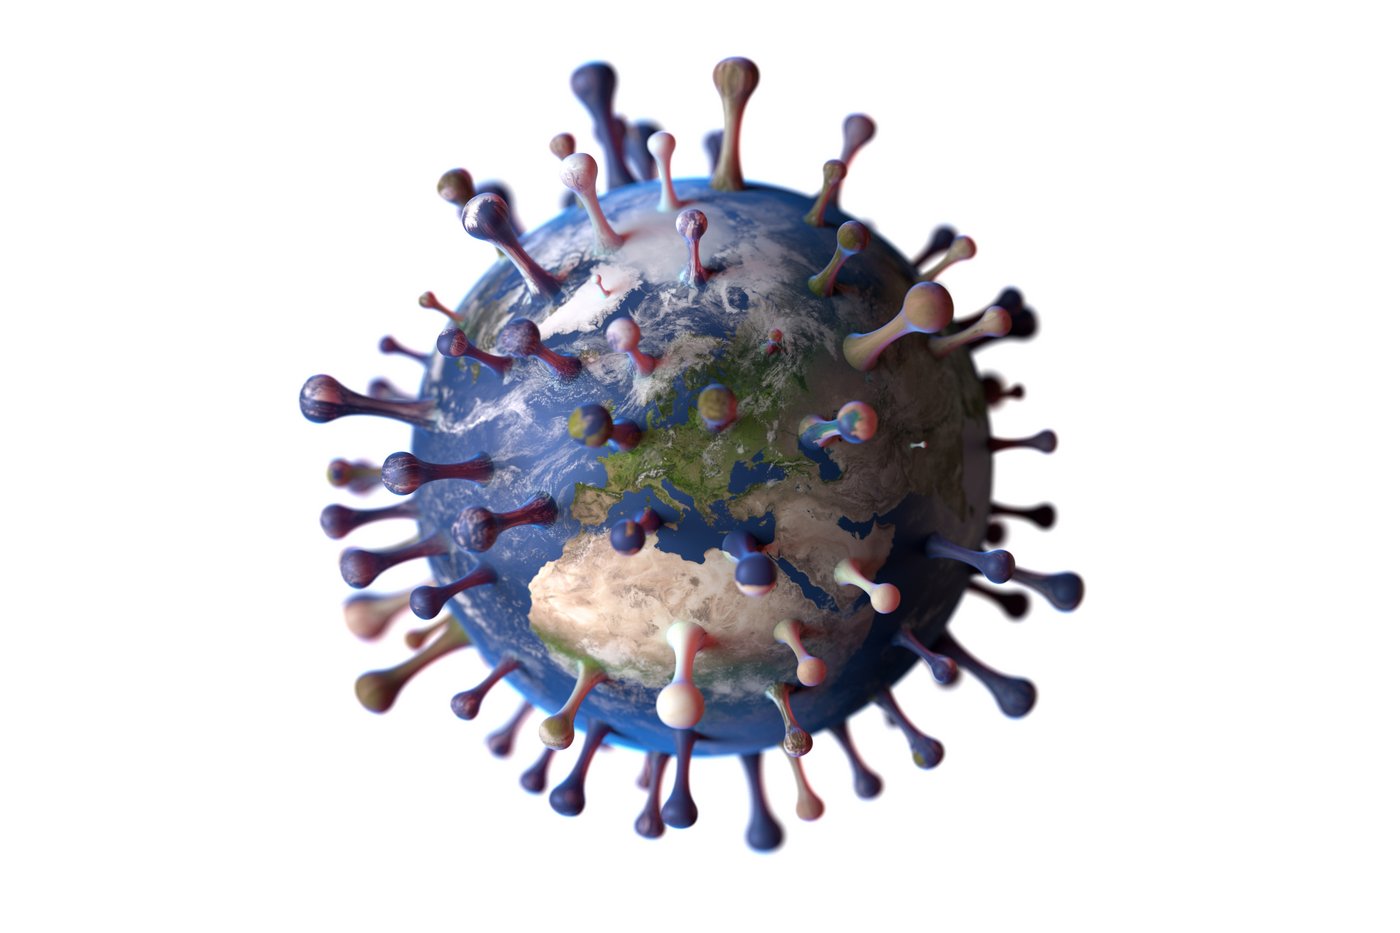 Globus als Virus